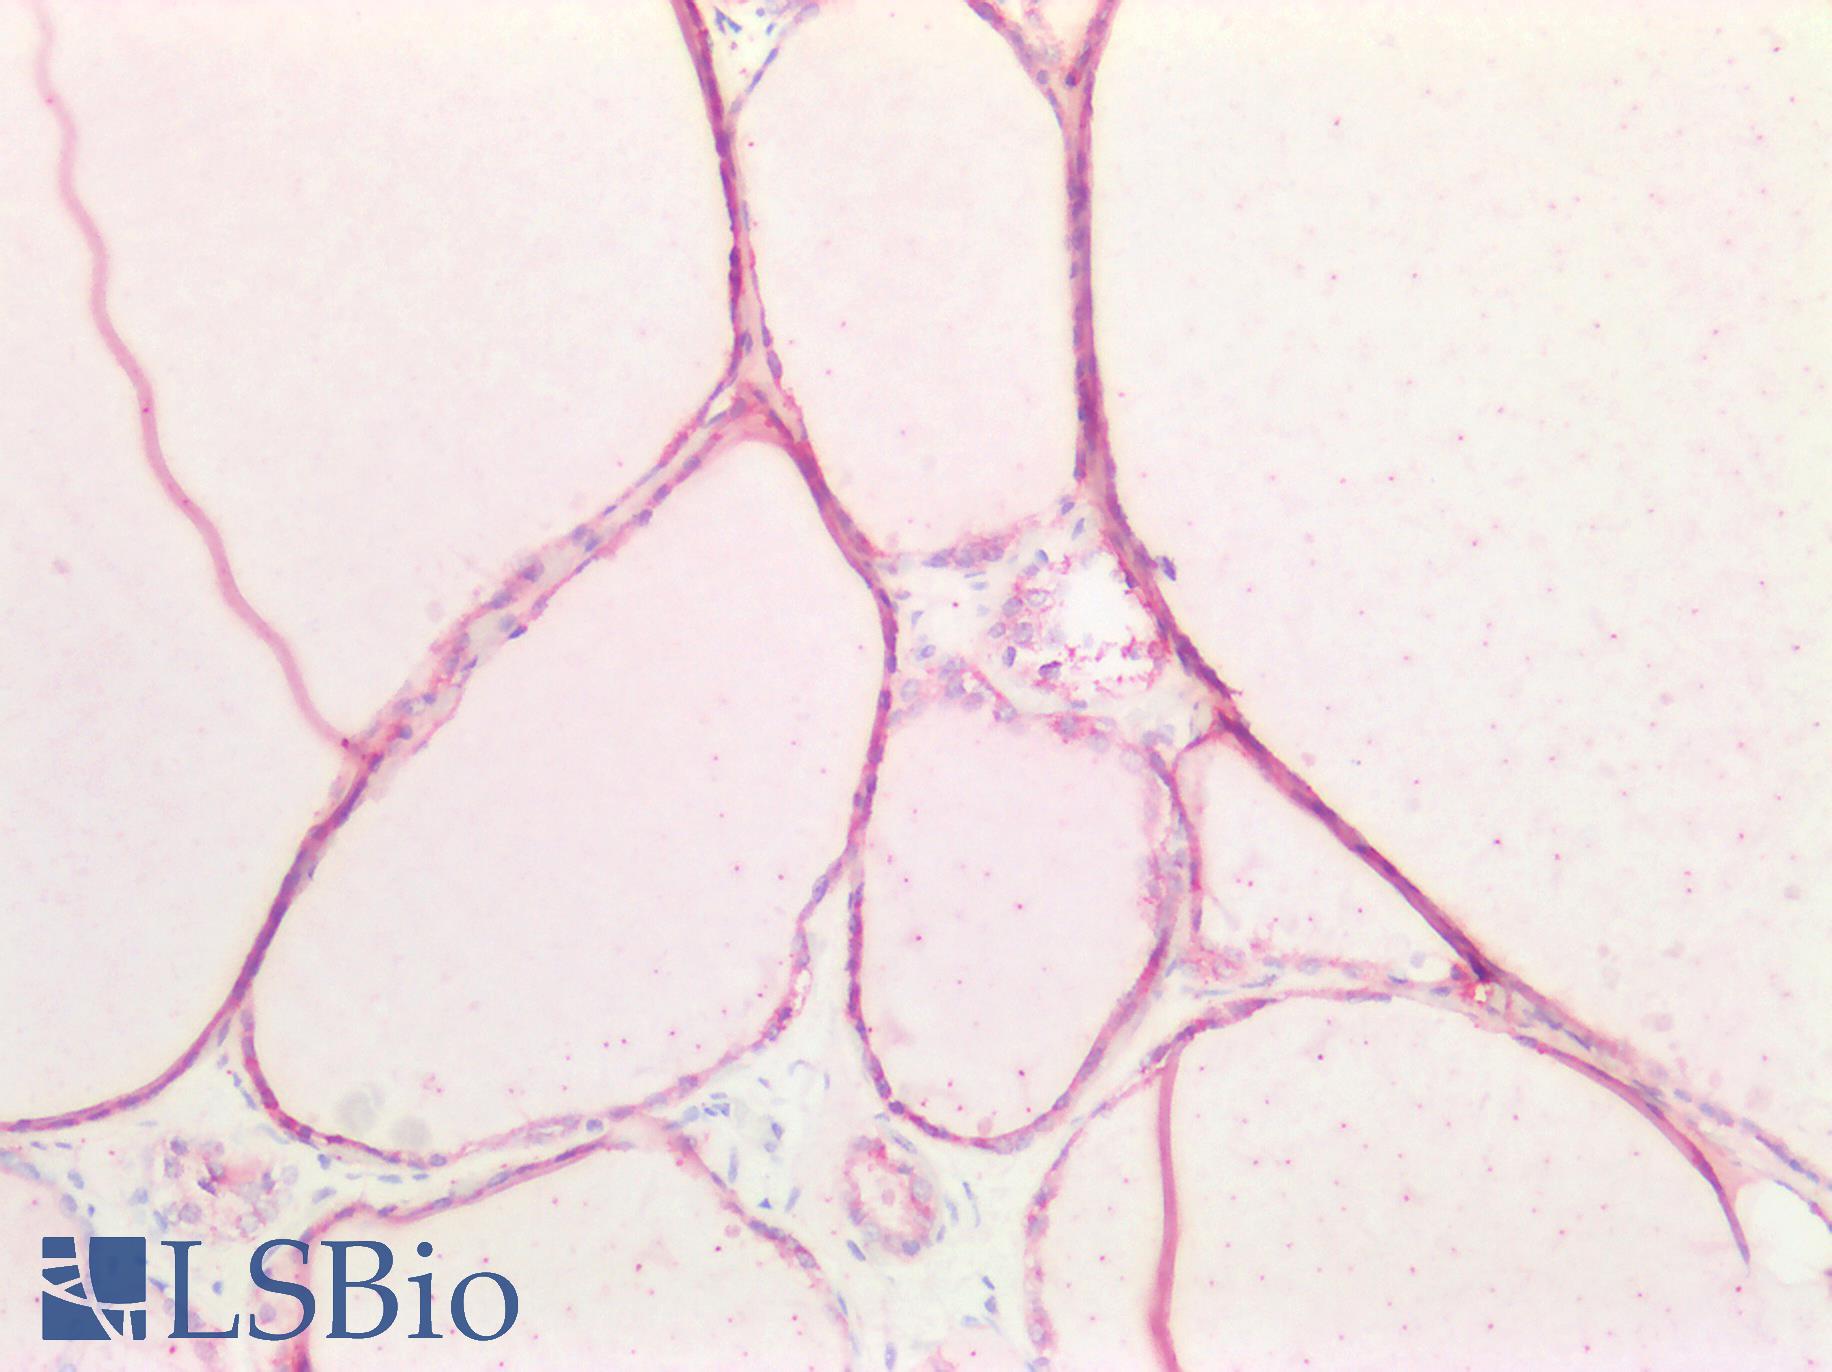 CDH16 / Cadherin 16 Antibody - Human Thyroid: Formalin-Fixed, Paraffin-Embedded (FFPE)